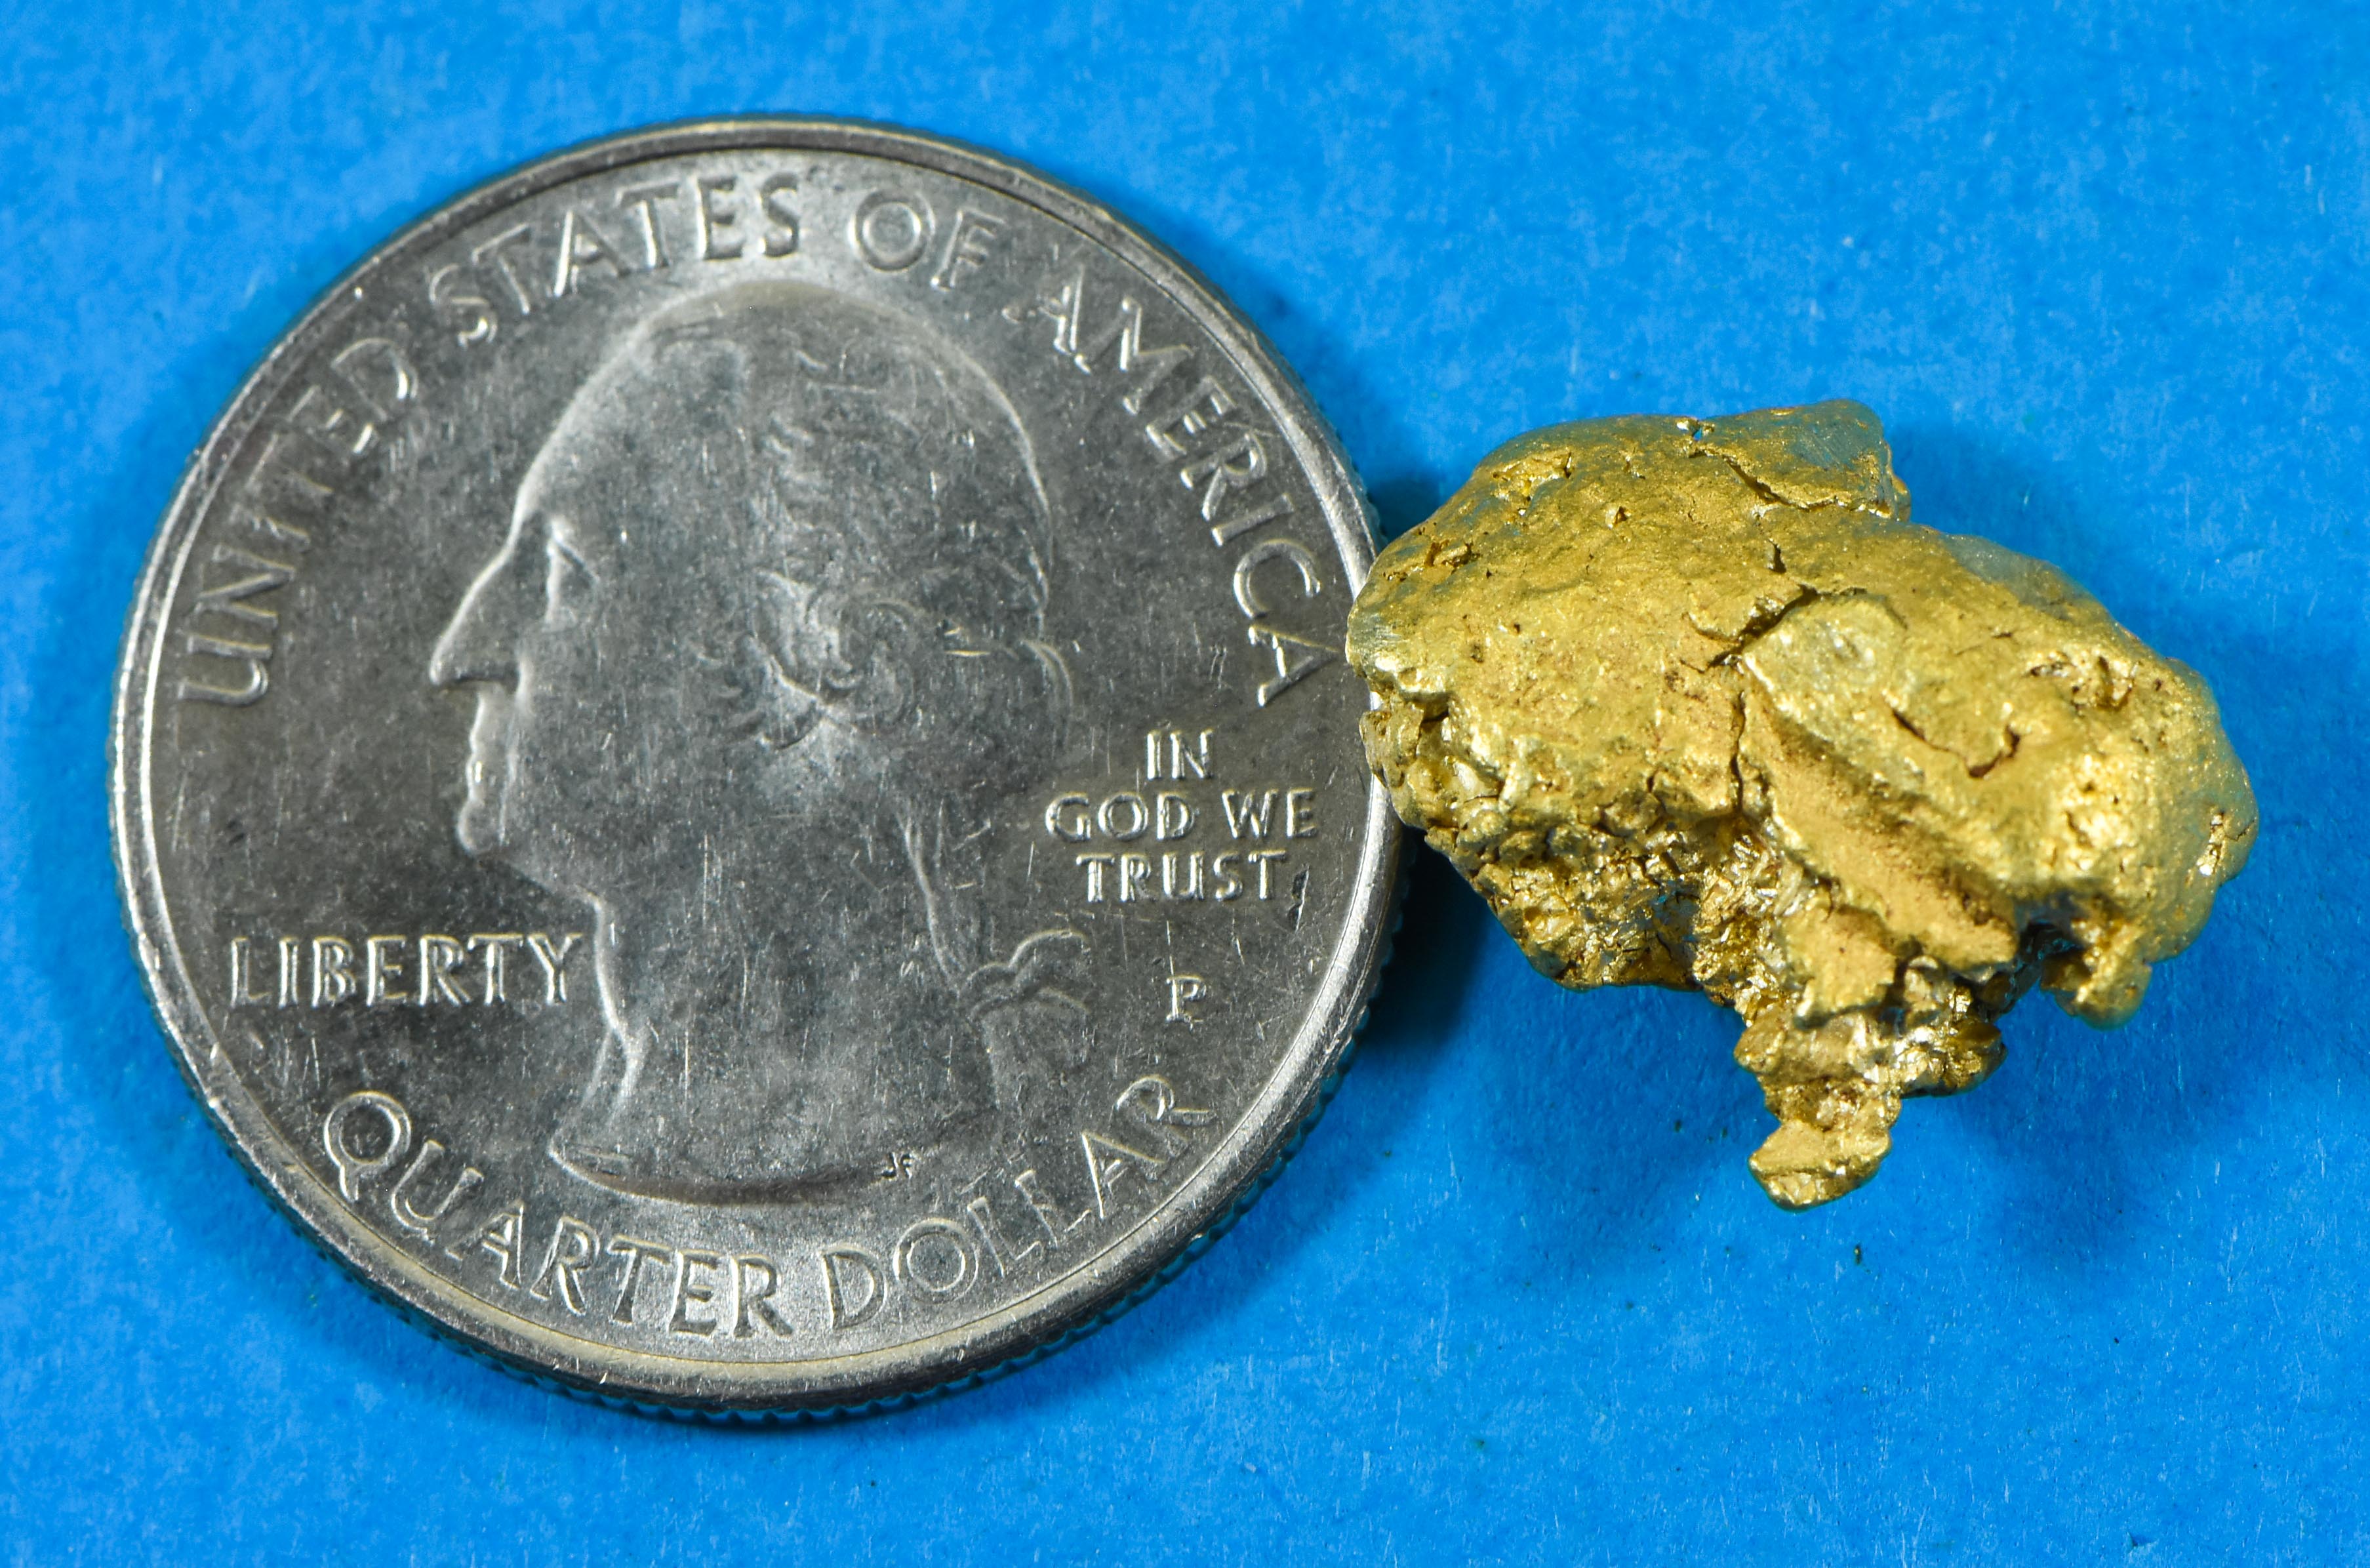 #520 Alaskan BC Natural Gold Nugget 7.82 Grams Genuine